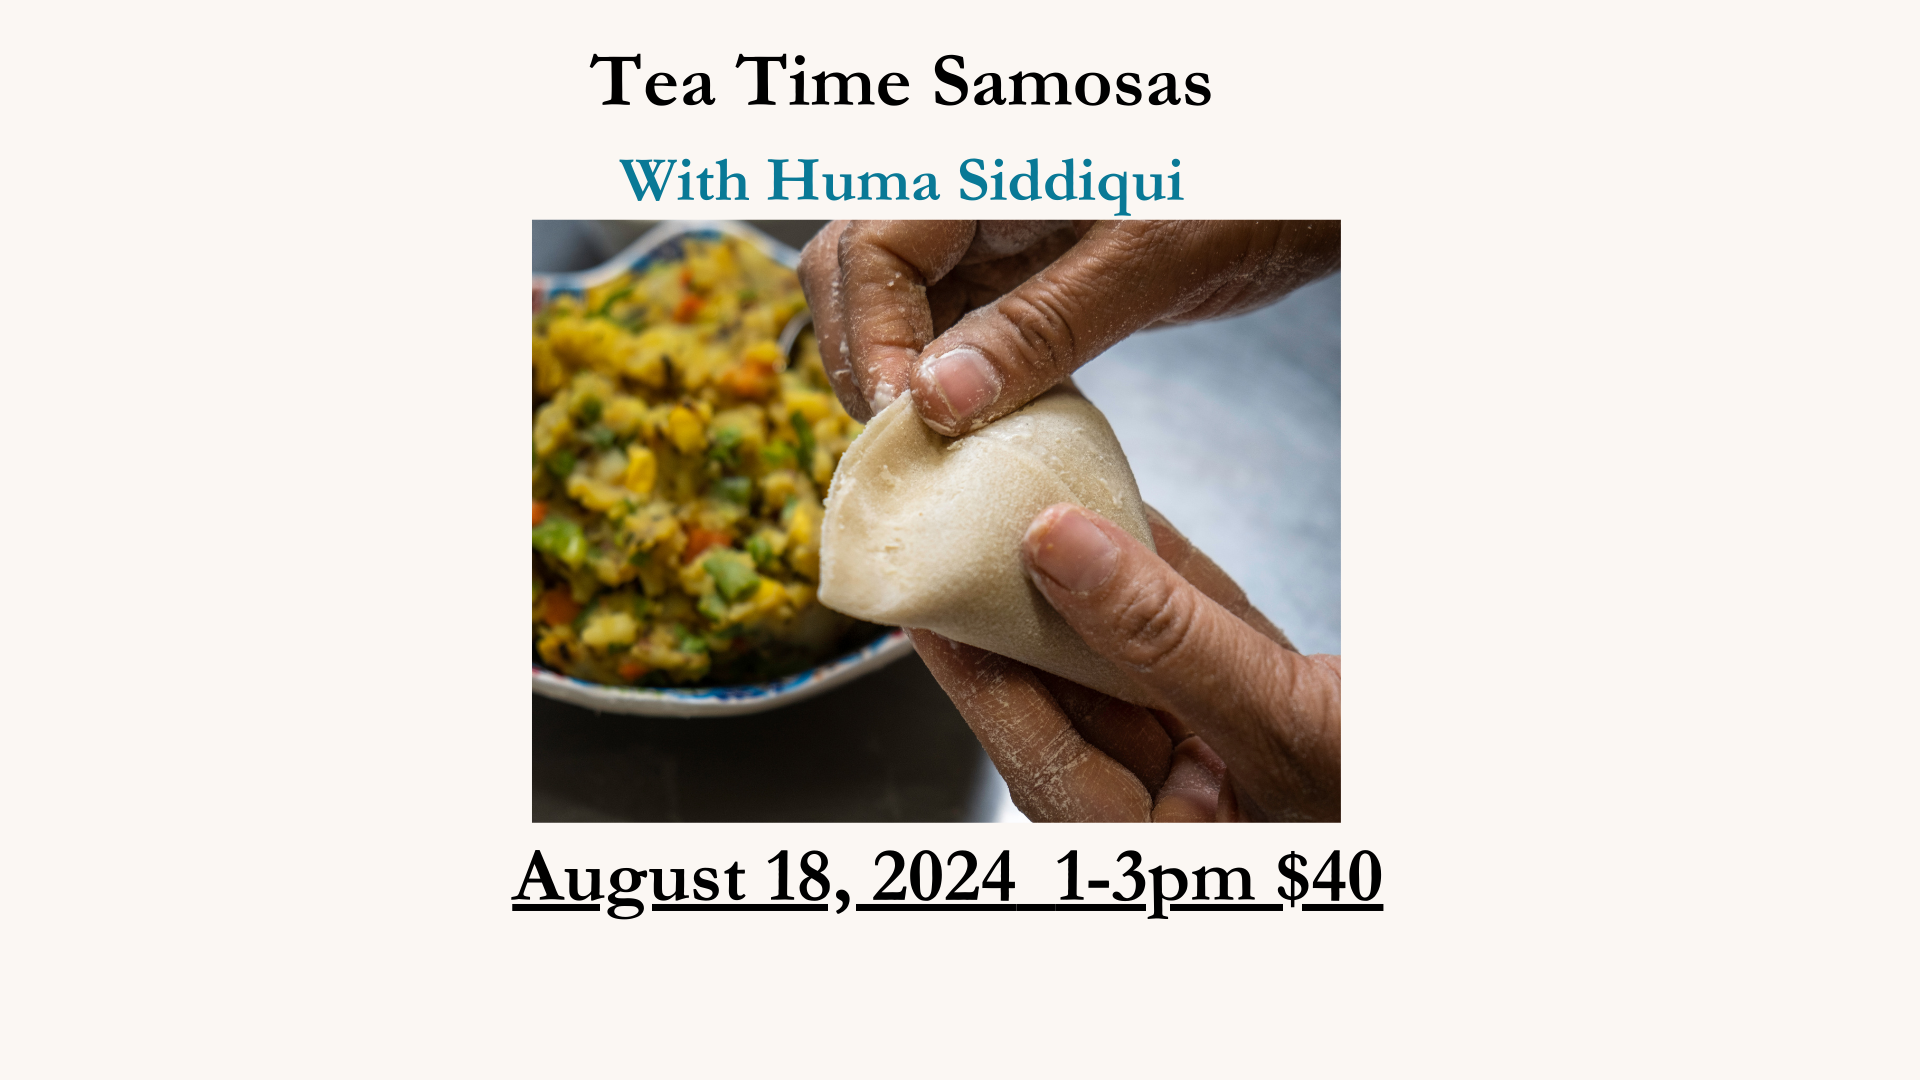 Tea Time Samosas August 18, 2024 1-3pm $40 Huma